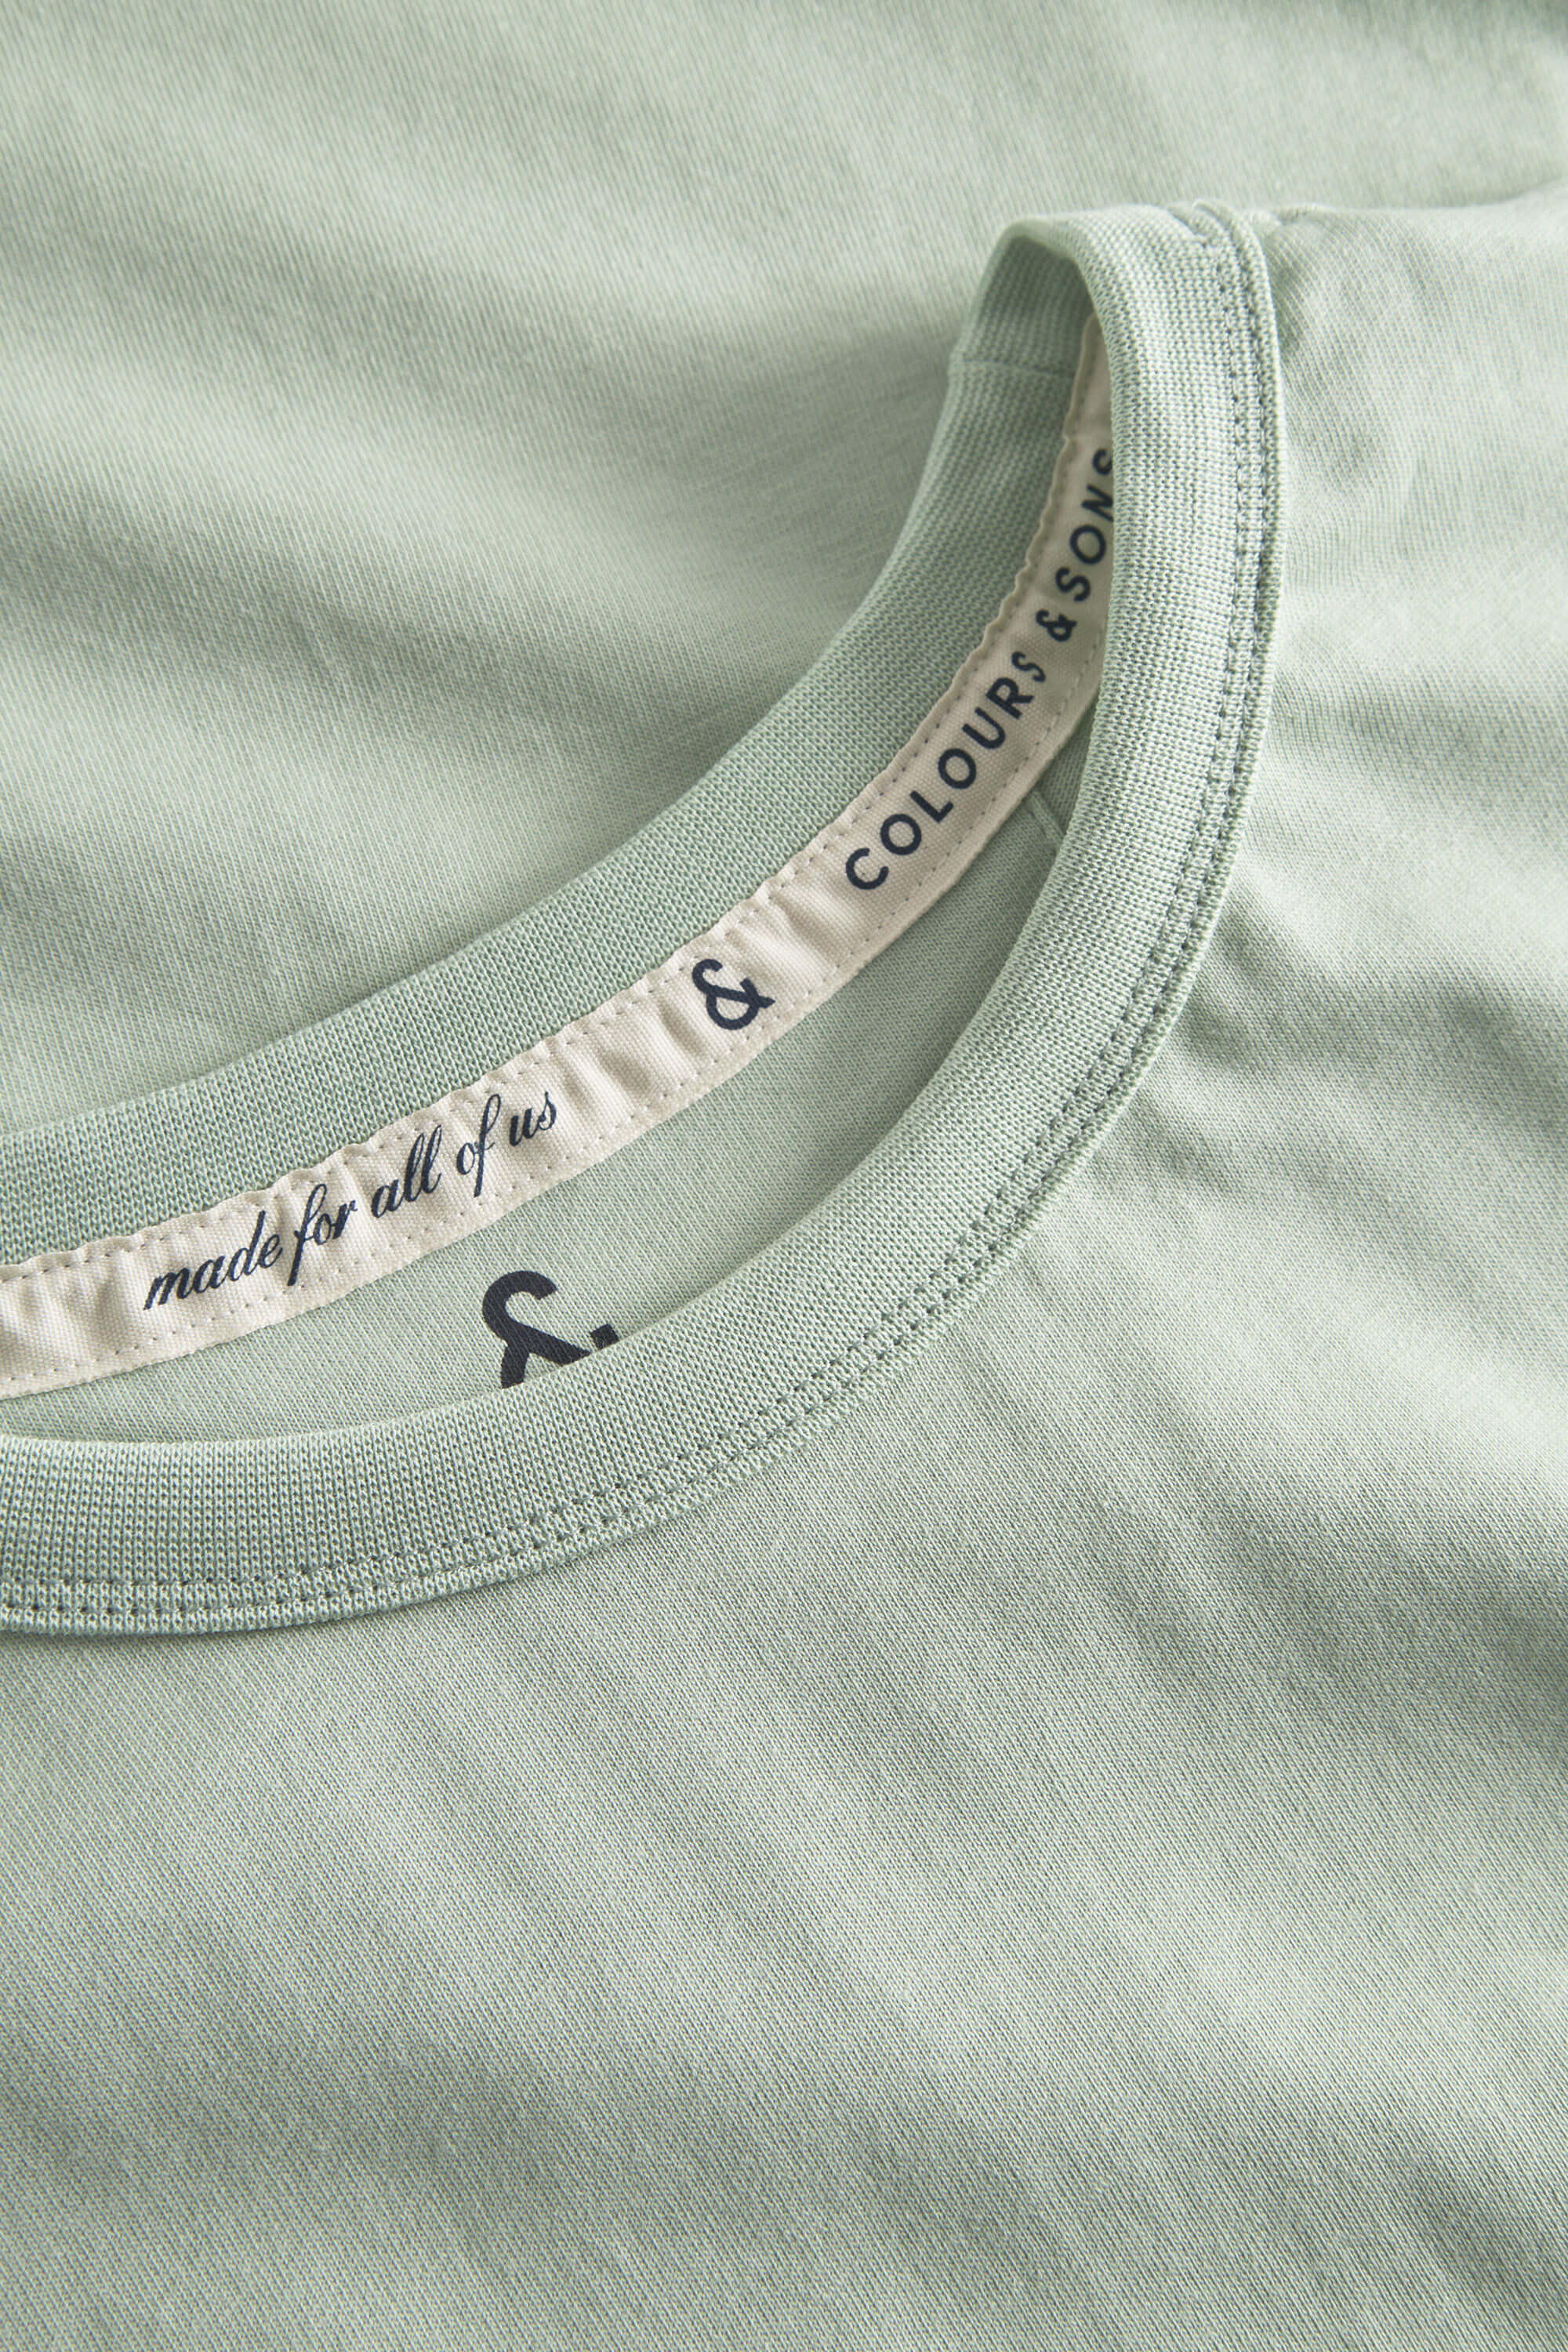 Herren T-Shirt, hellgrün, 100% Baumwolle  von Colours & Sons